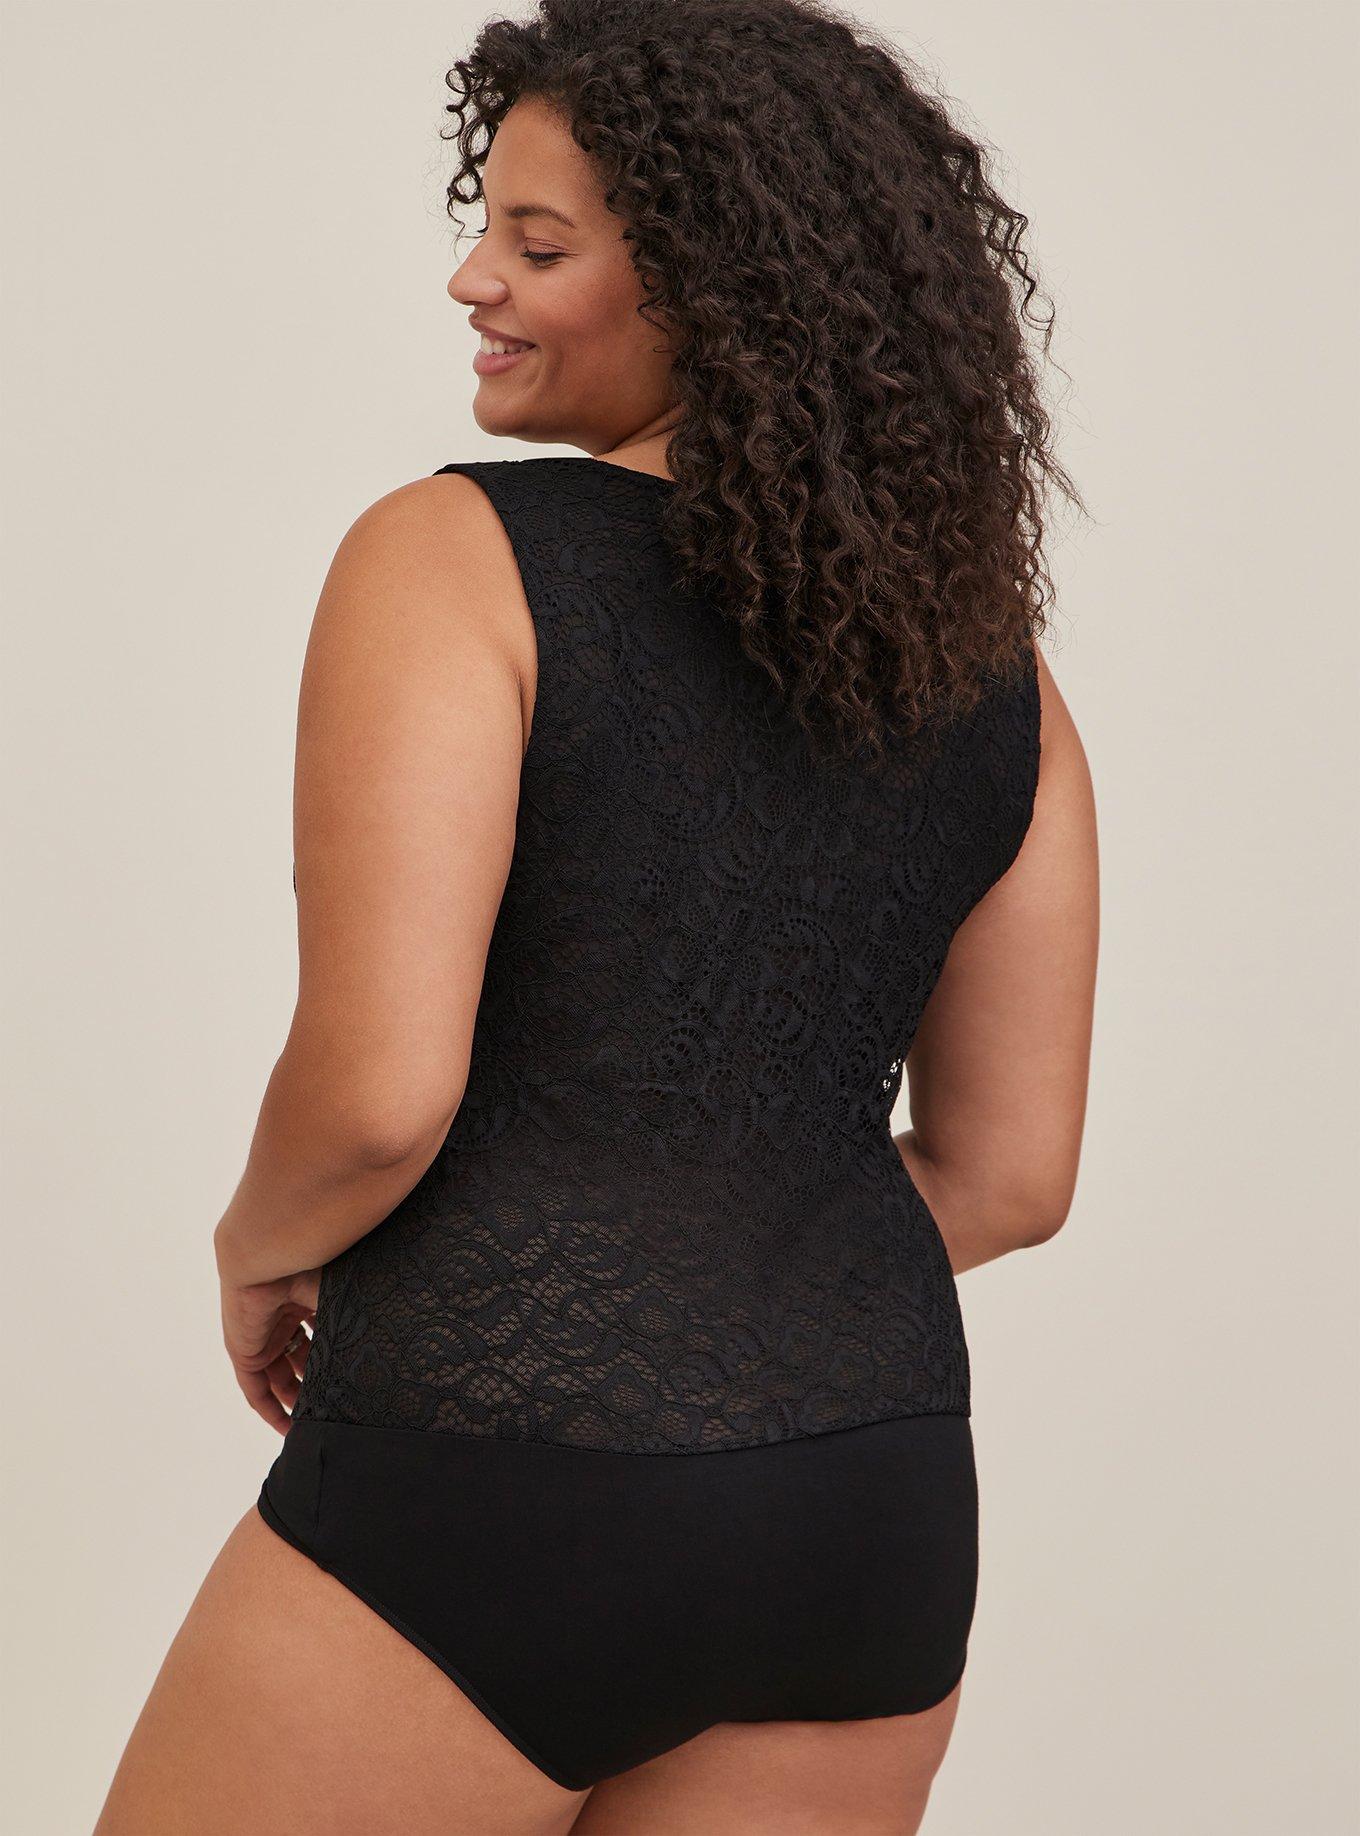 Black lace bodysuit size L/XL